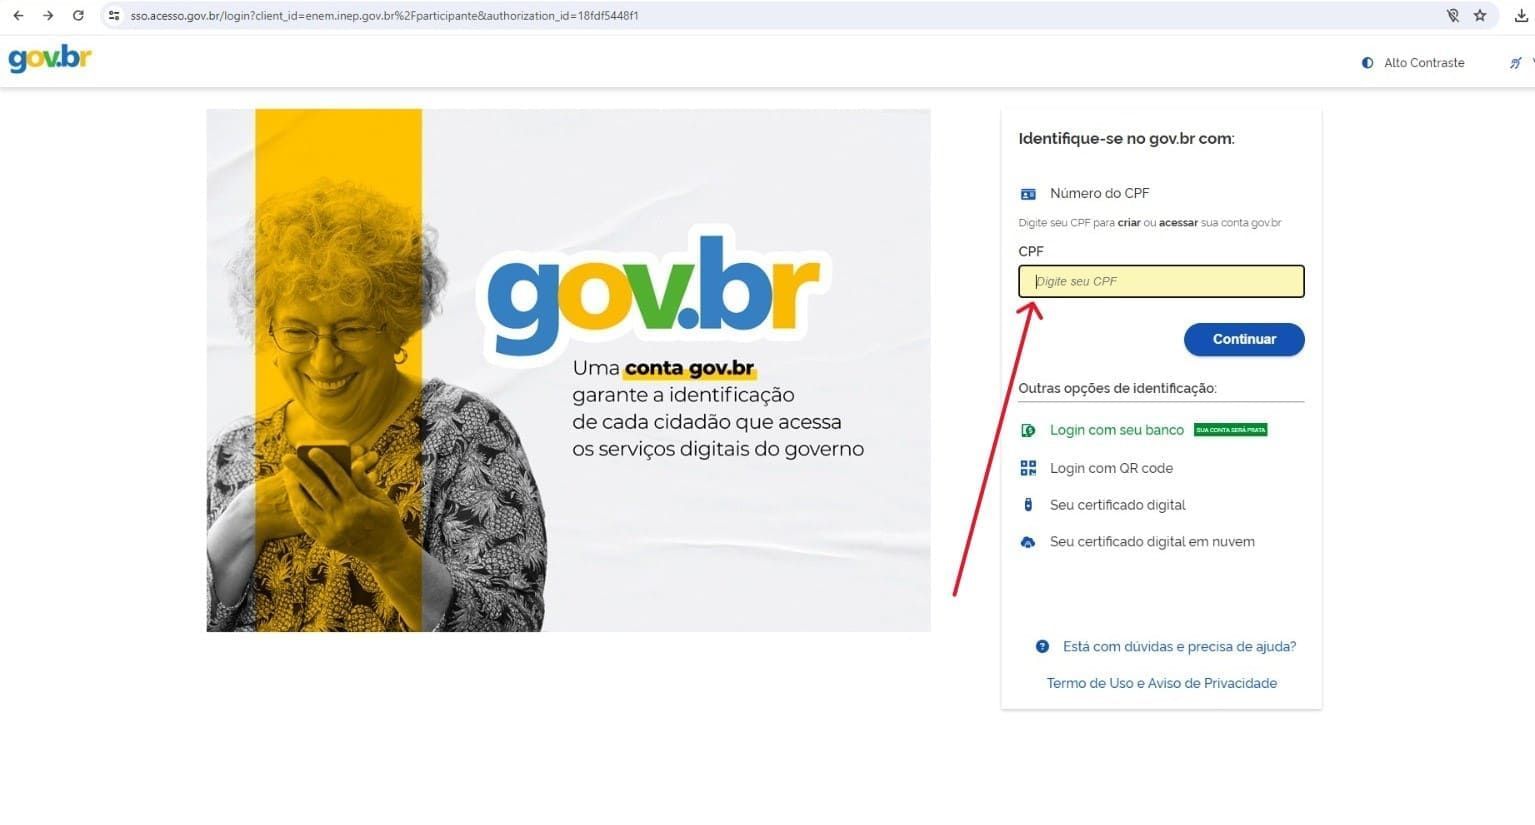 Página inicial para login no site gov.br